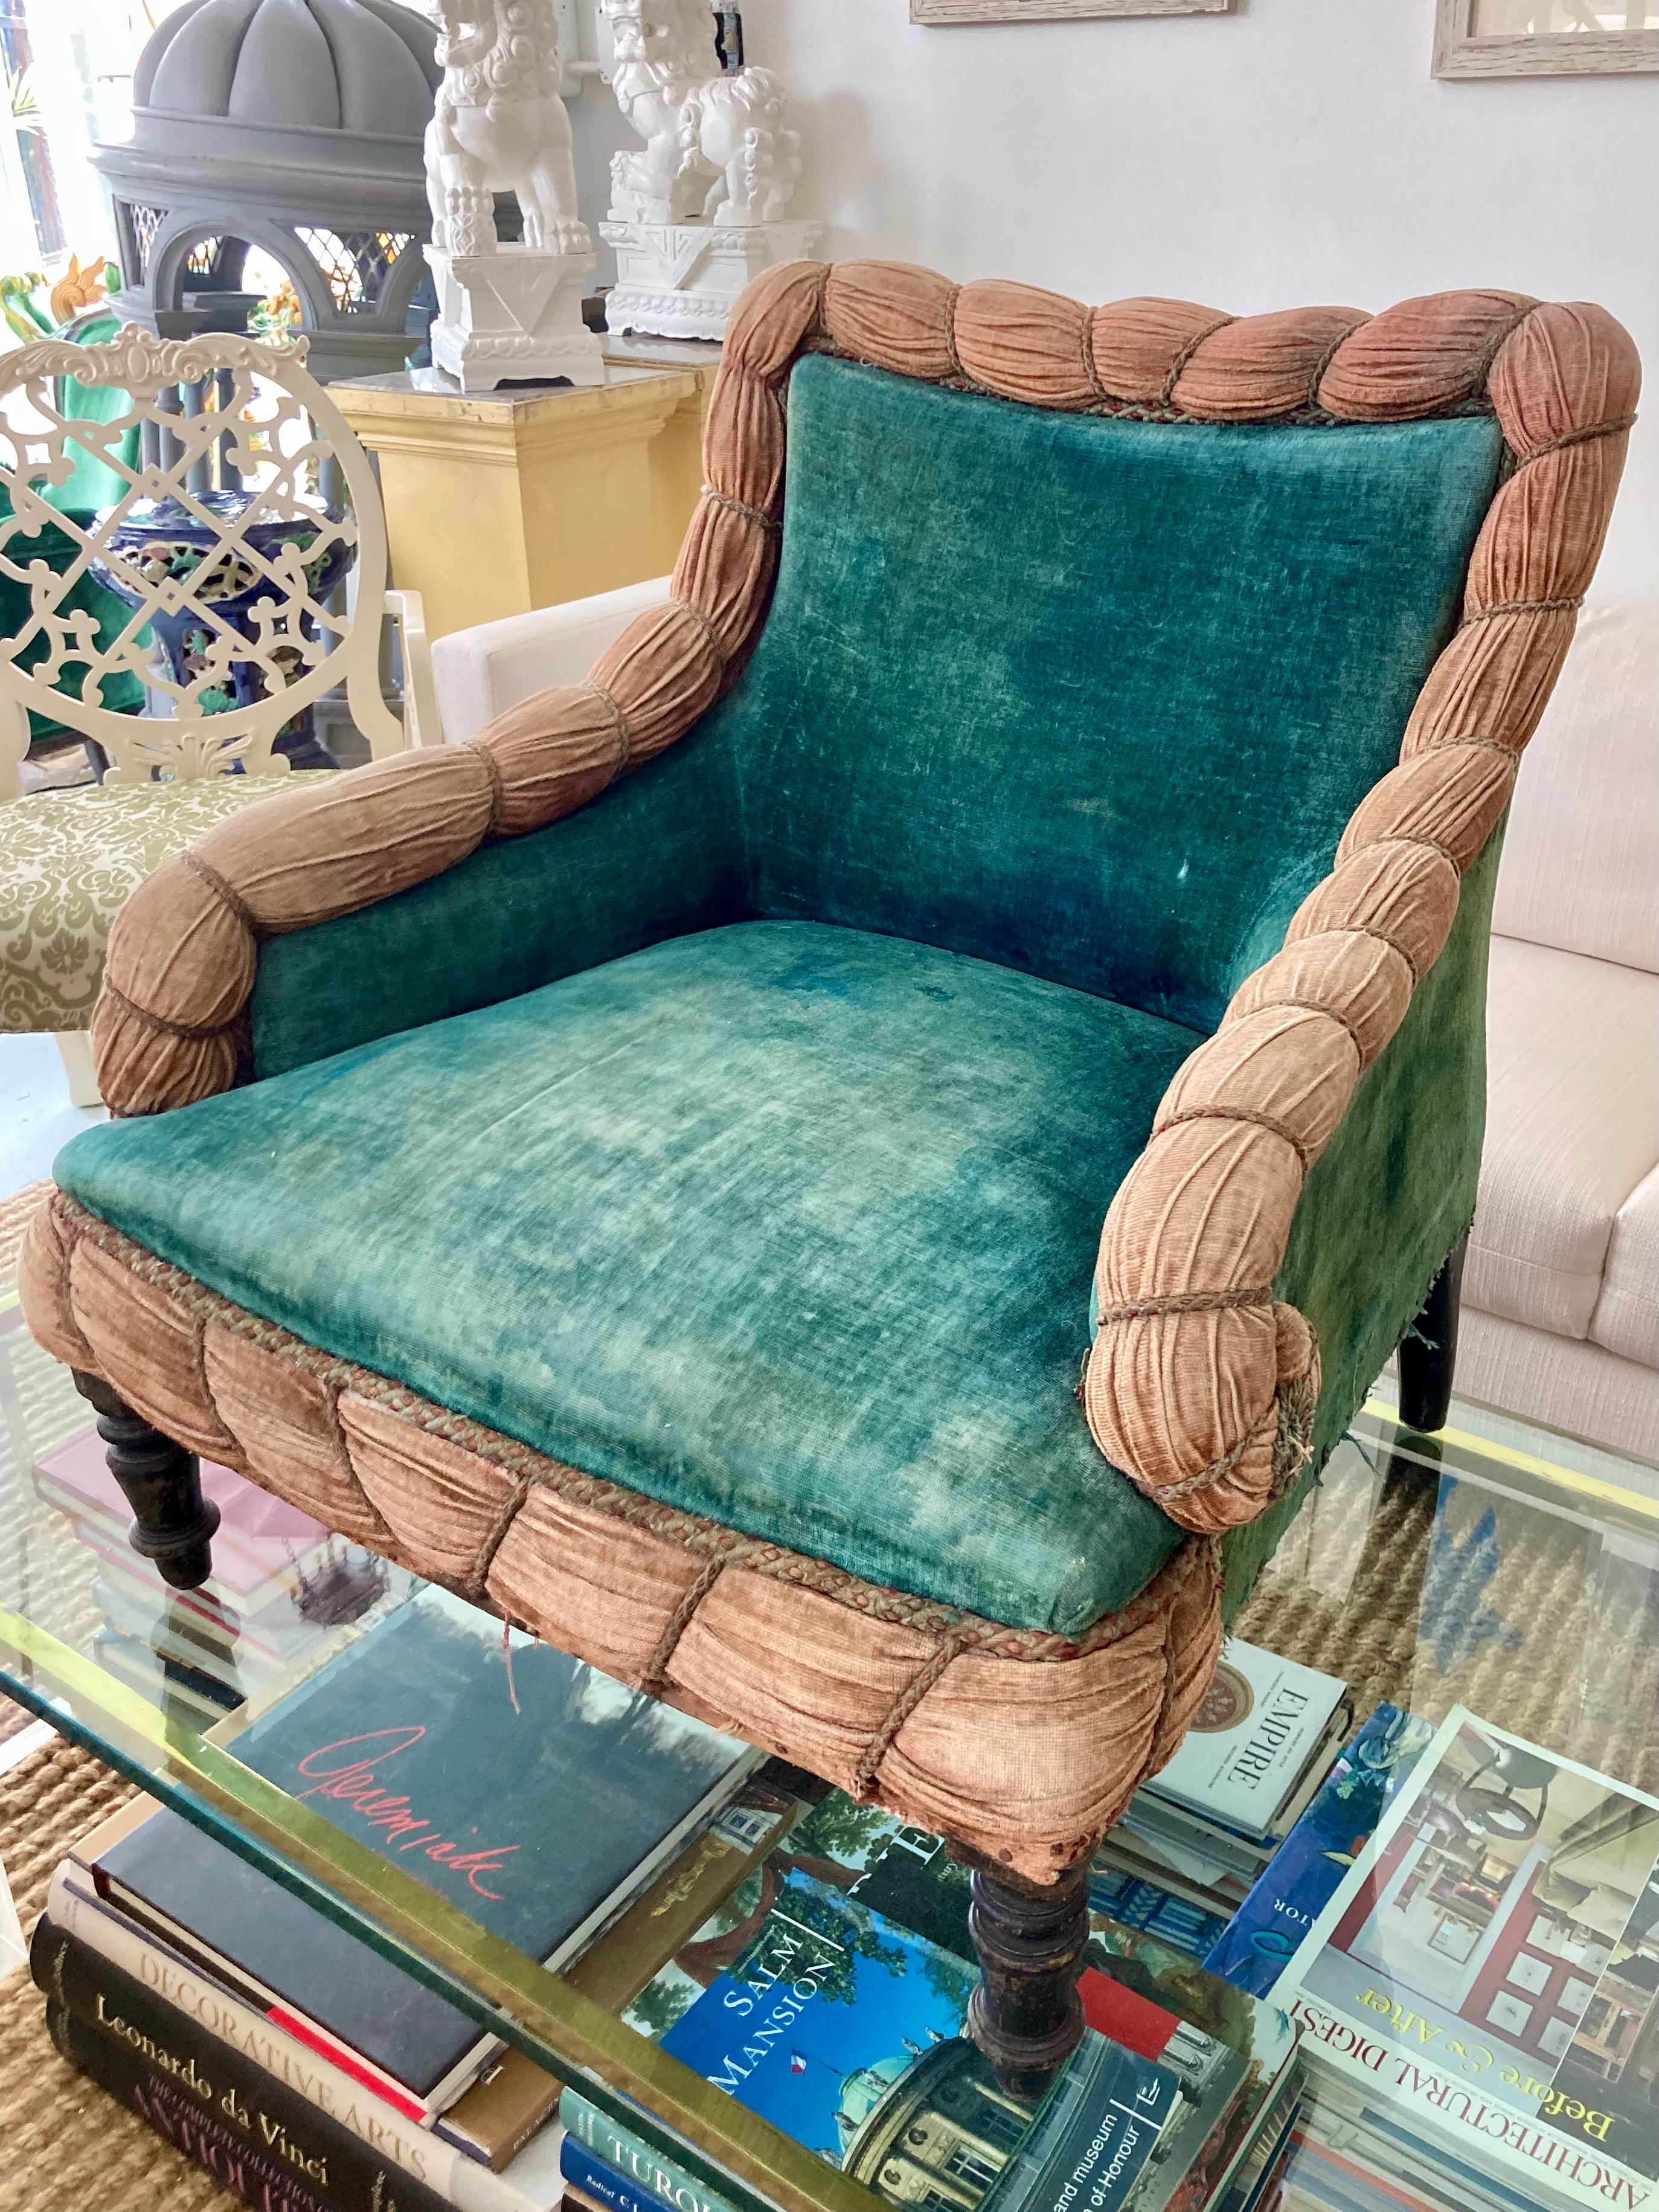 Un étonnant fauteuil club Napoléon III du 19ème siècle, avec tous les textiles d'origine ! Laissez-le tel quel, ou demandez à votre service de tapisserie d'ameublement d'opérer sa magie ! J'adore tous les détails incroyables de la tapisserie